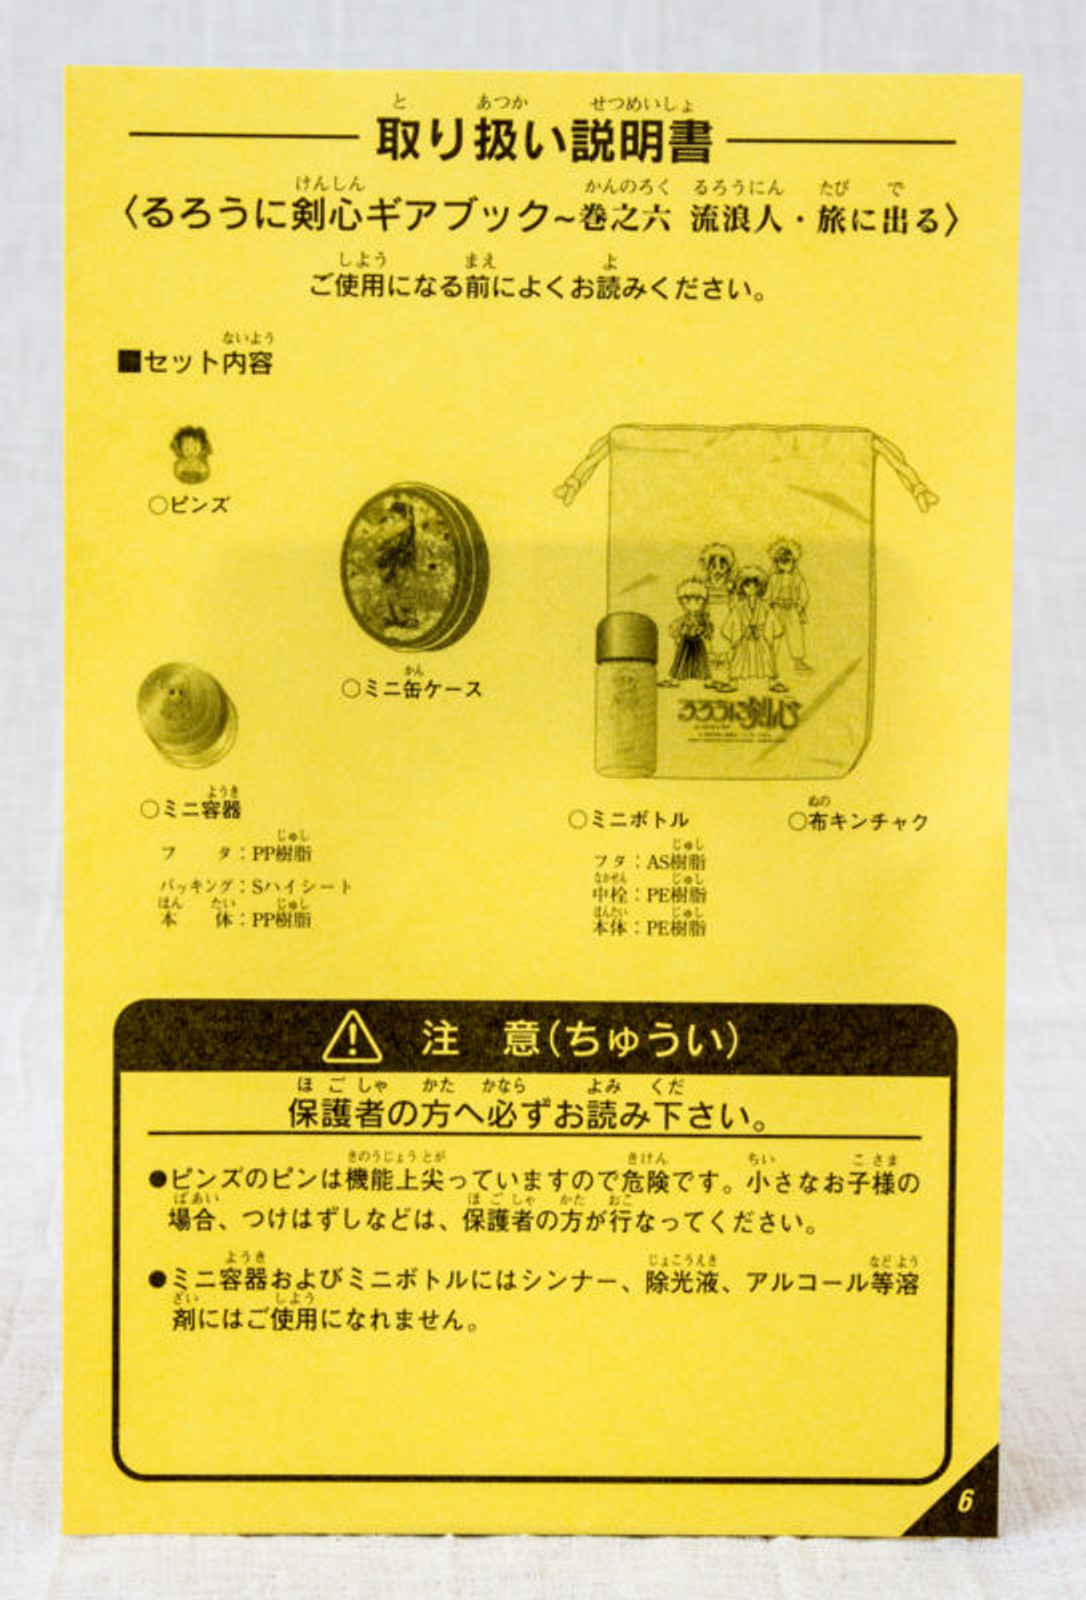 Rurouni Kenshin Kaoru Kamiya Goods Set Case Drawstring bag Pins JAPAN ANIME